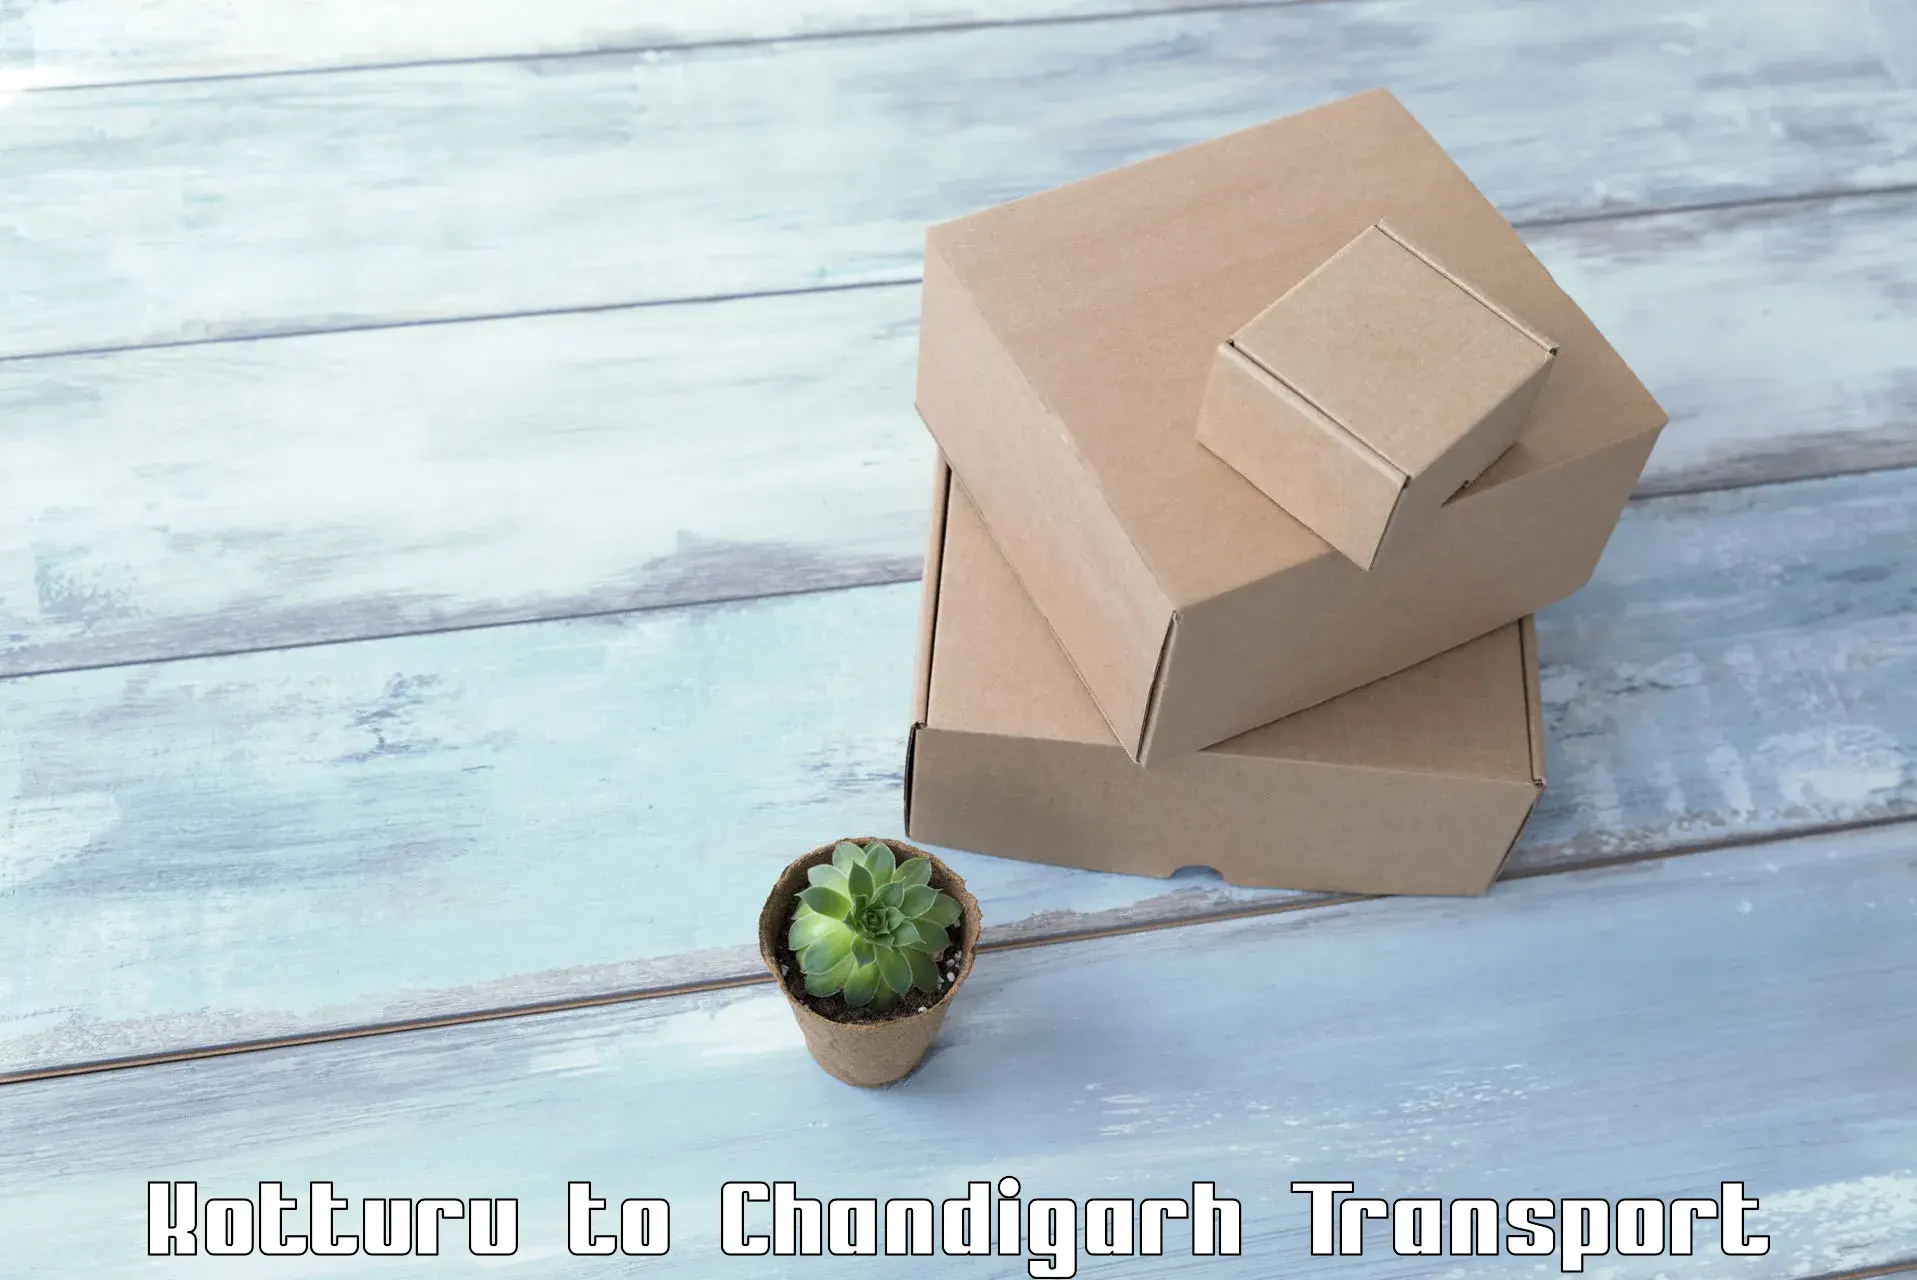 Cargo transport services Kotturu to Chandigarh